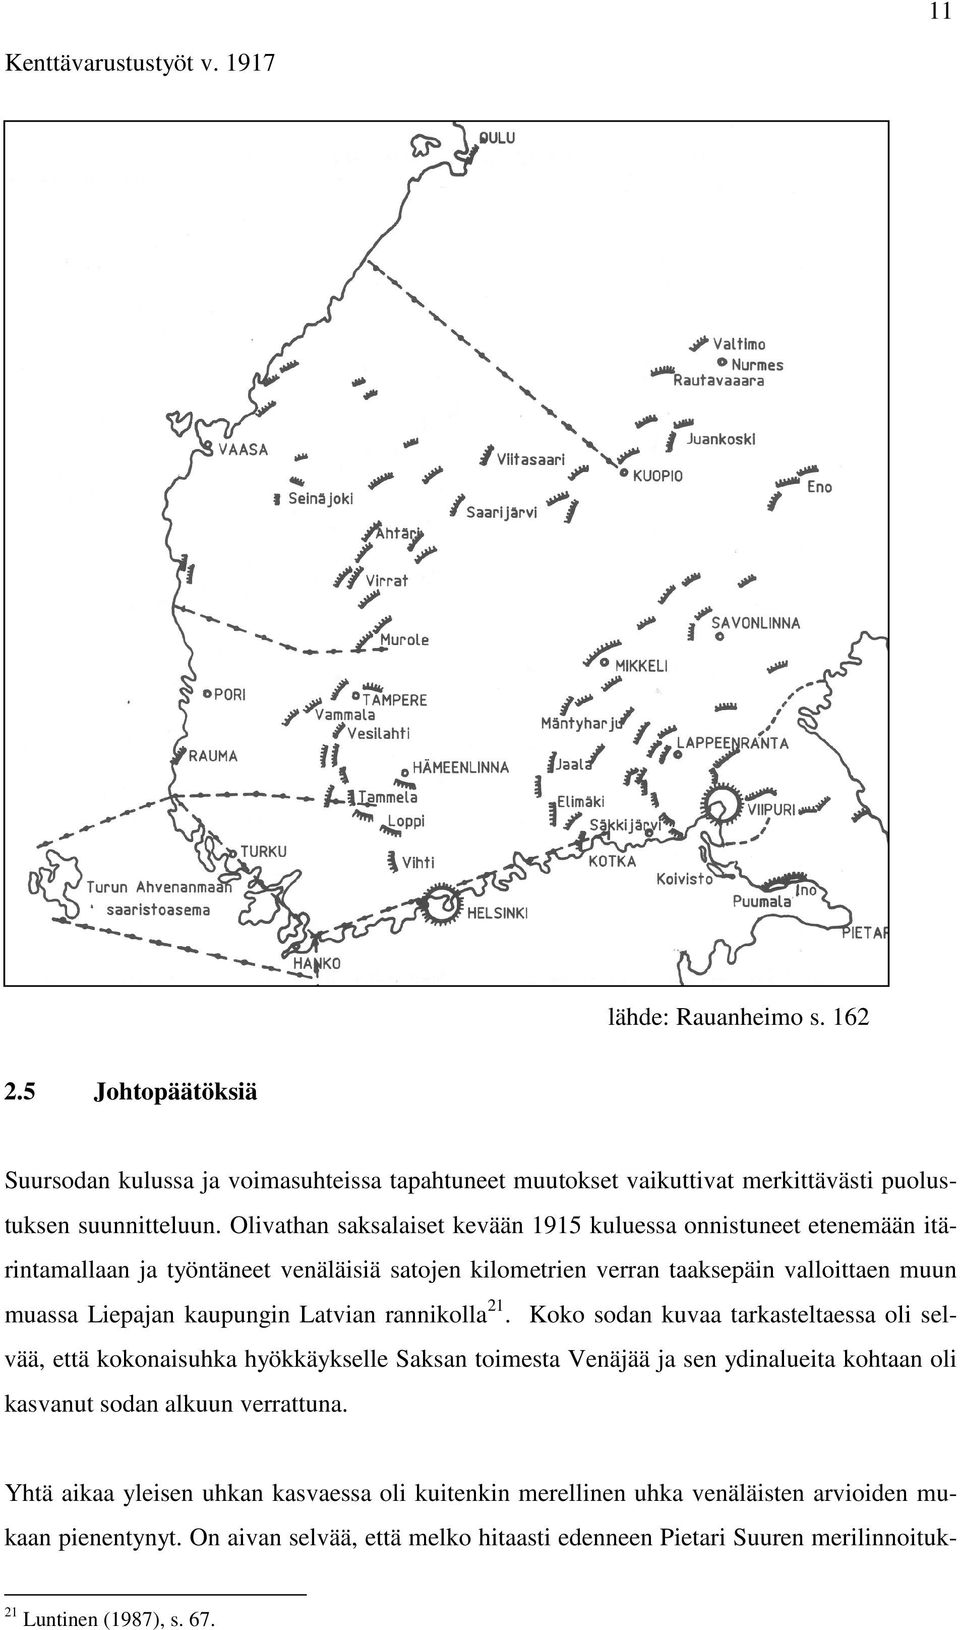 Latvian rannikolla 21. Koko sodan kuvaa tarkasteltaessa oli selvää, että kokonaisuhka hyökkäykselle Saksan toimesta Venäjää ja sen ydinalueita kohtaan oli kasvanut sodan alkuun verrattuna.